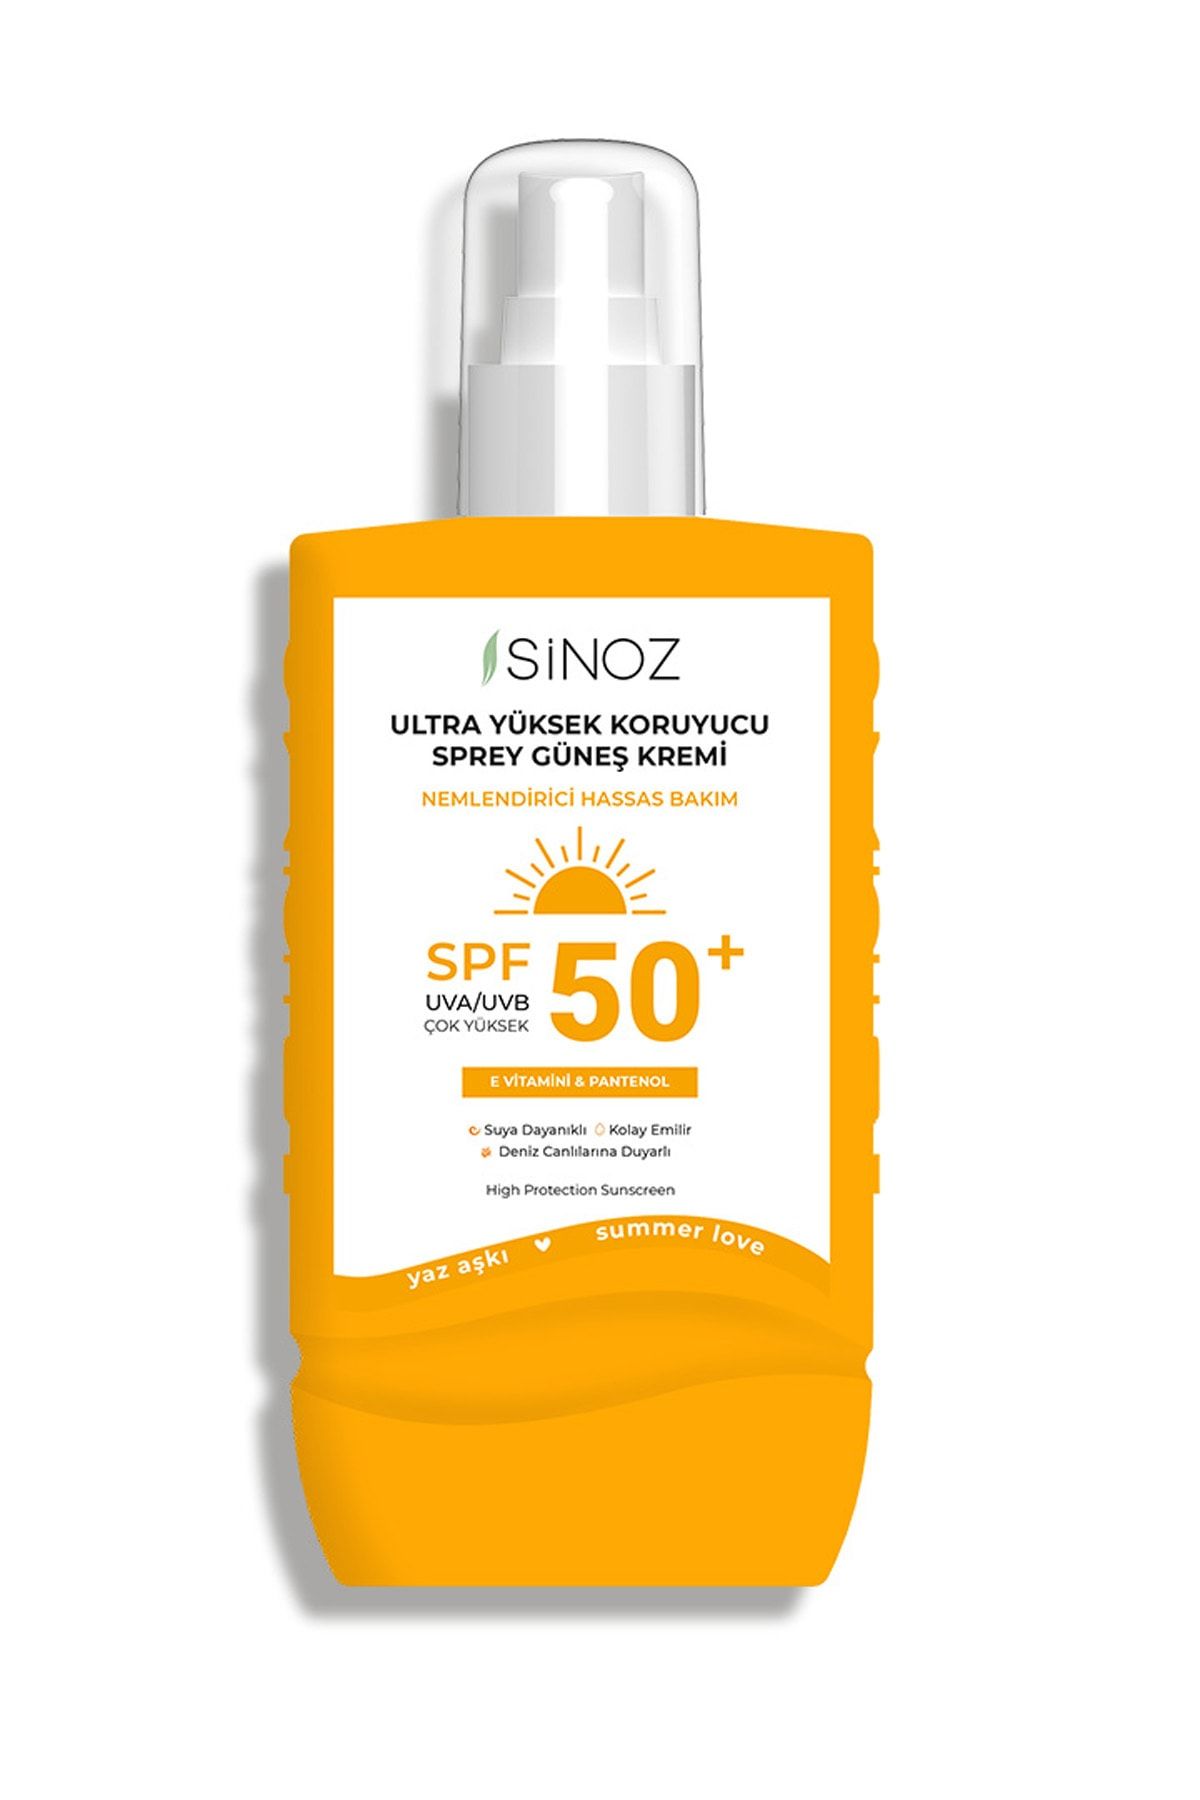 Sinoz Spf50+Ultra Yüksek KoruyucuVücut GüneşKremi - Nemlendirici Hassas Bakım - 200 Ml Sprey